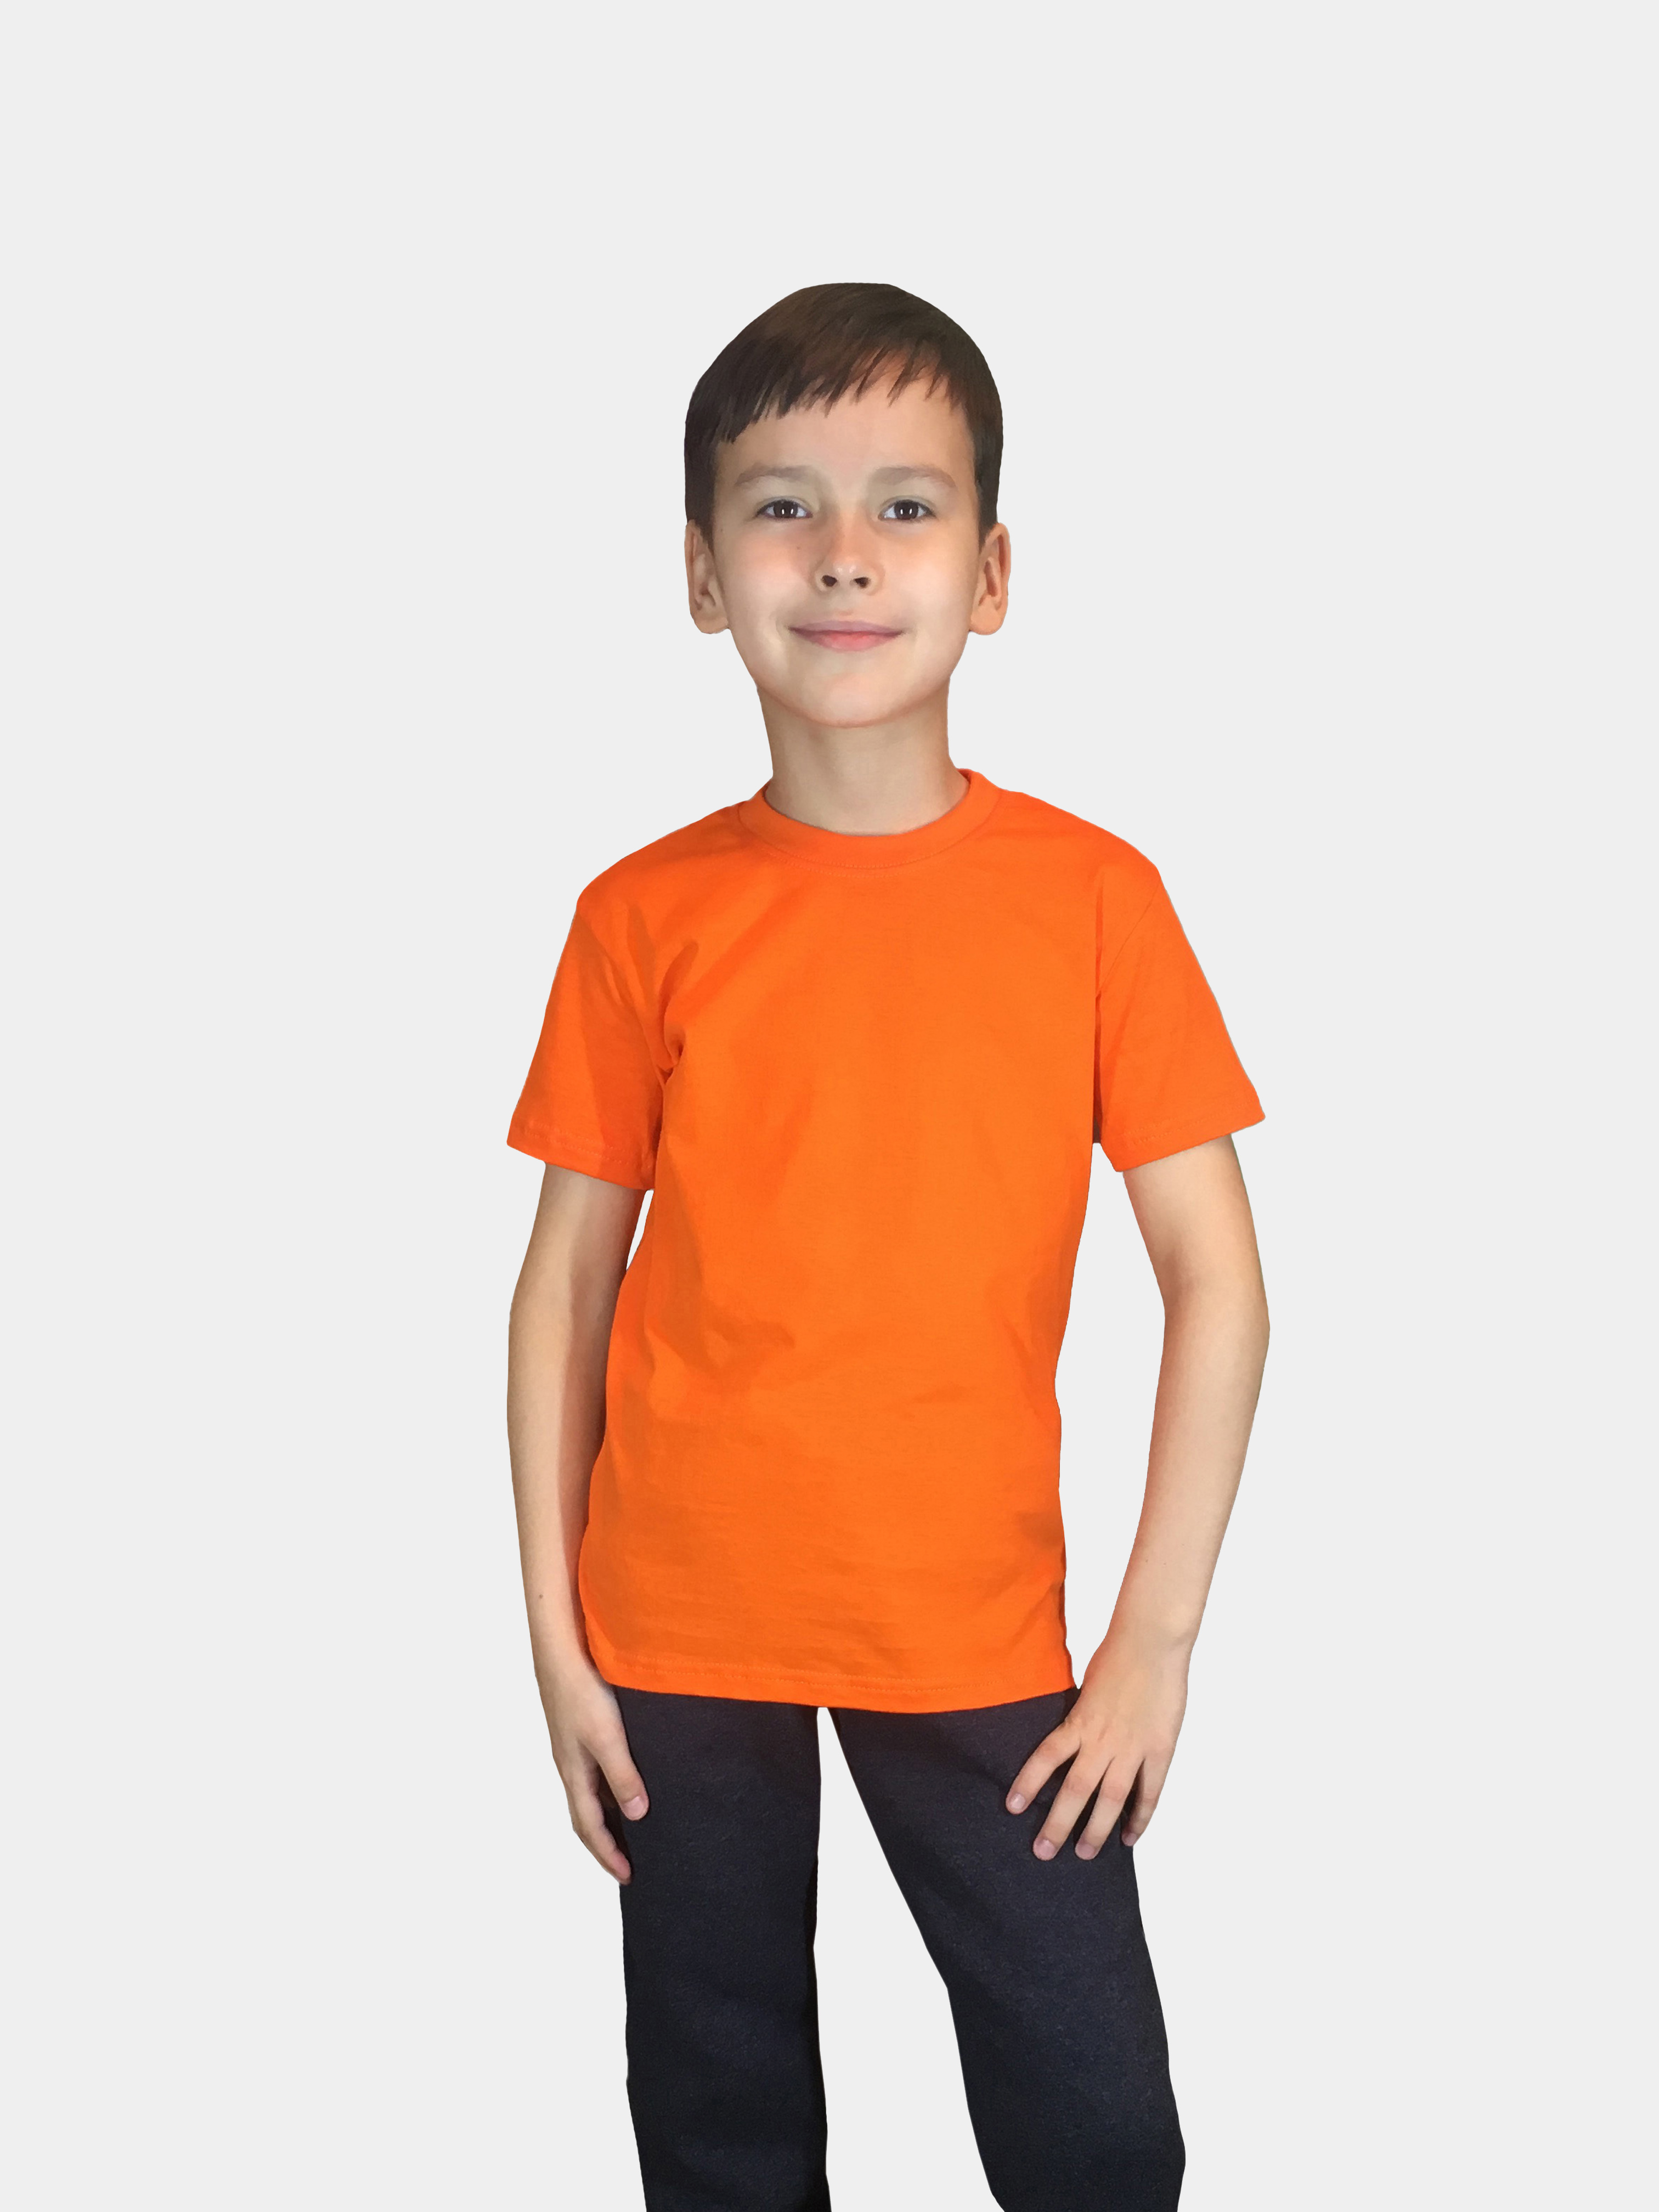 Футболка детская Детрик, оранжевая размер 104, Ф-1-113